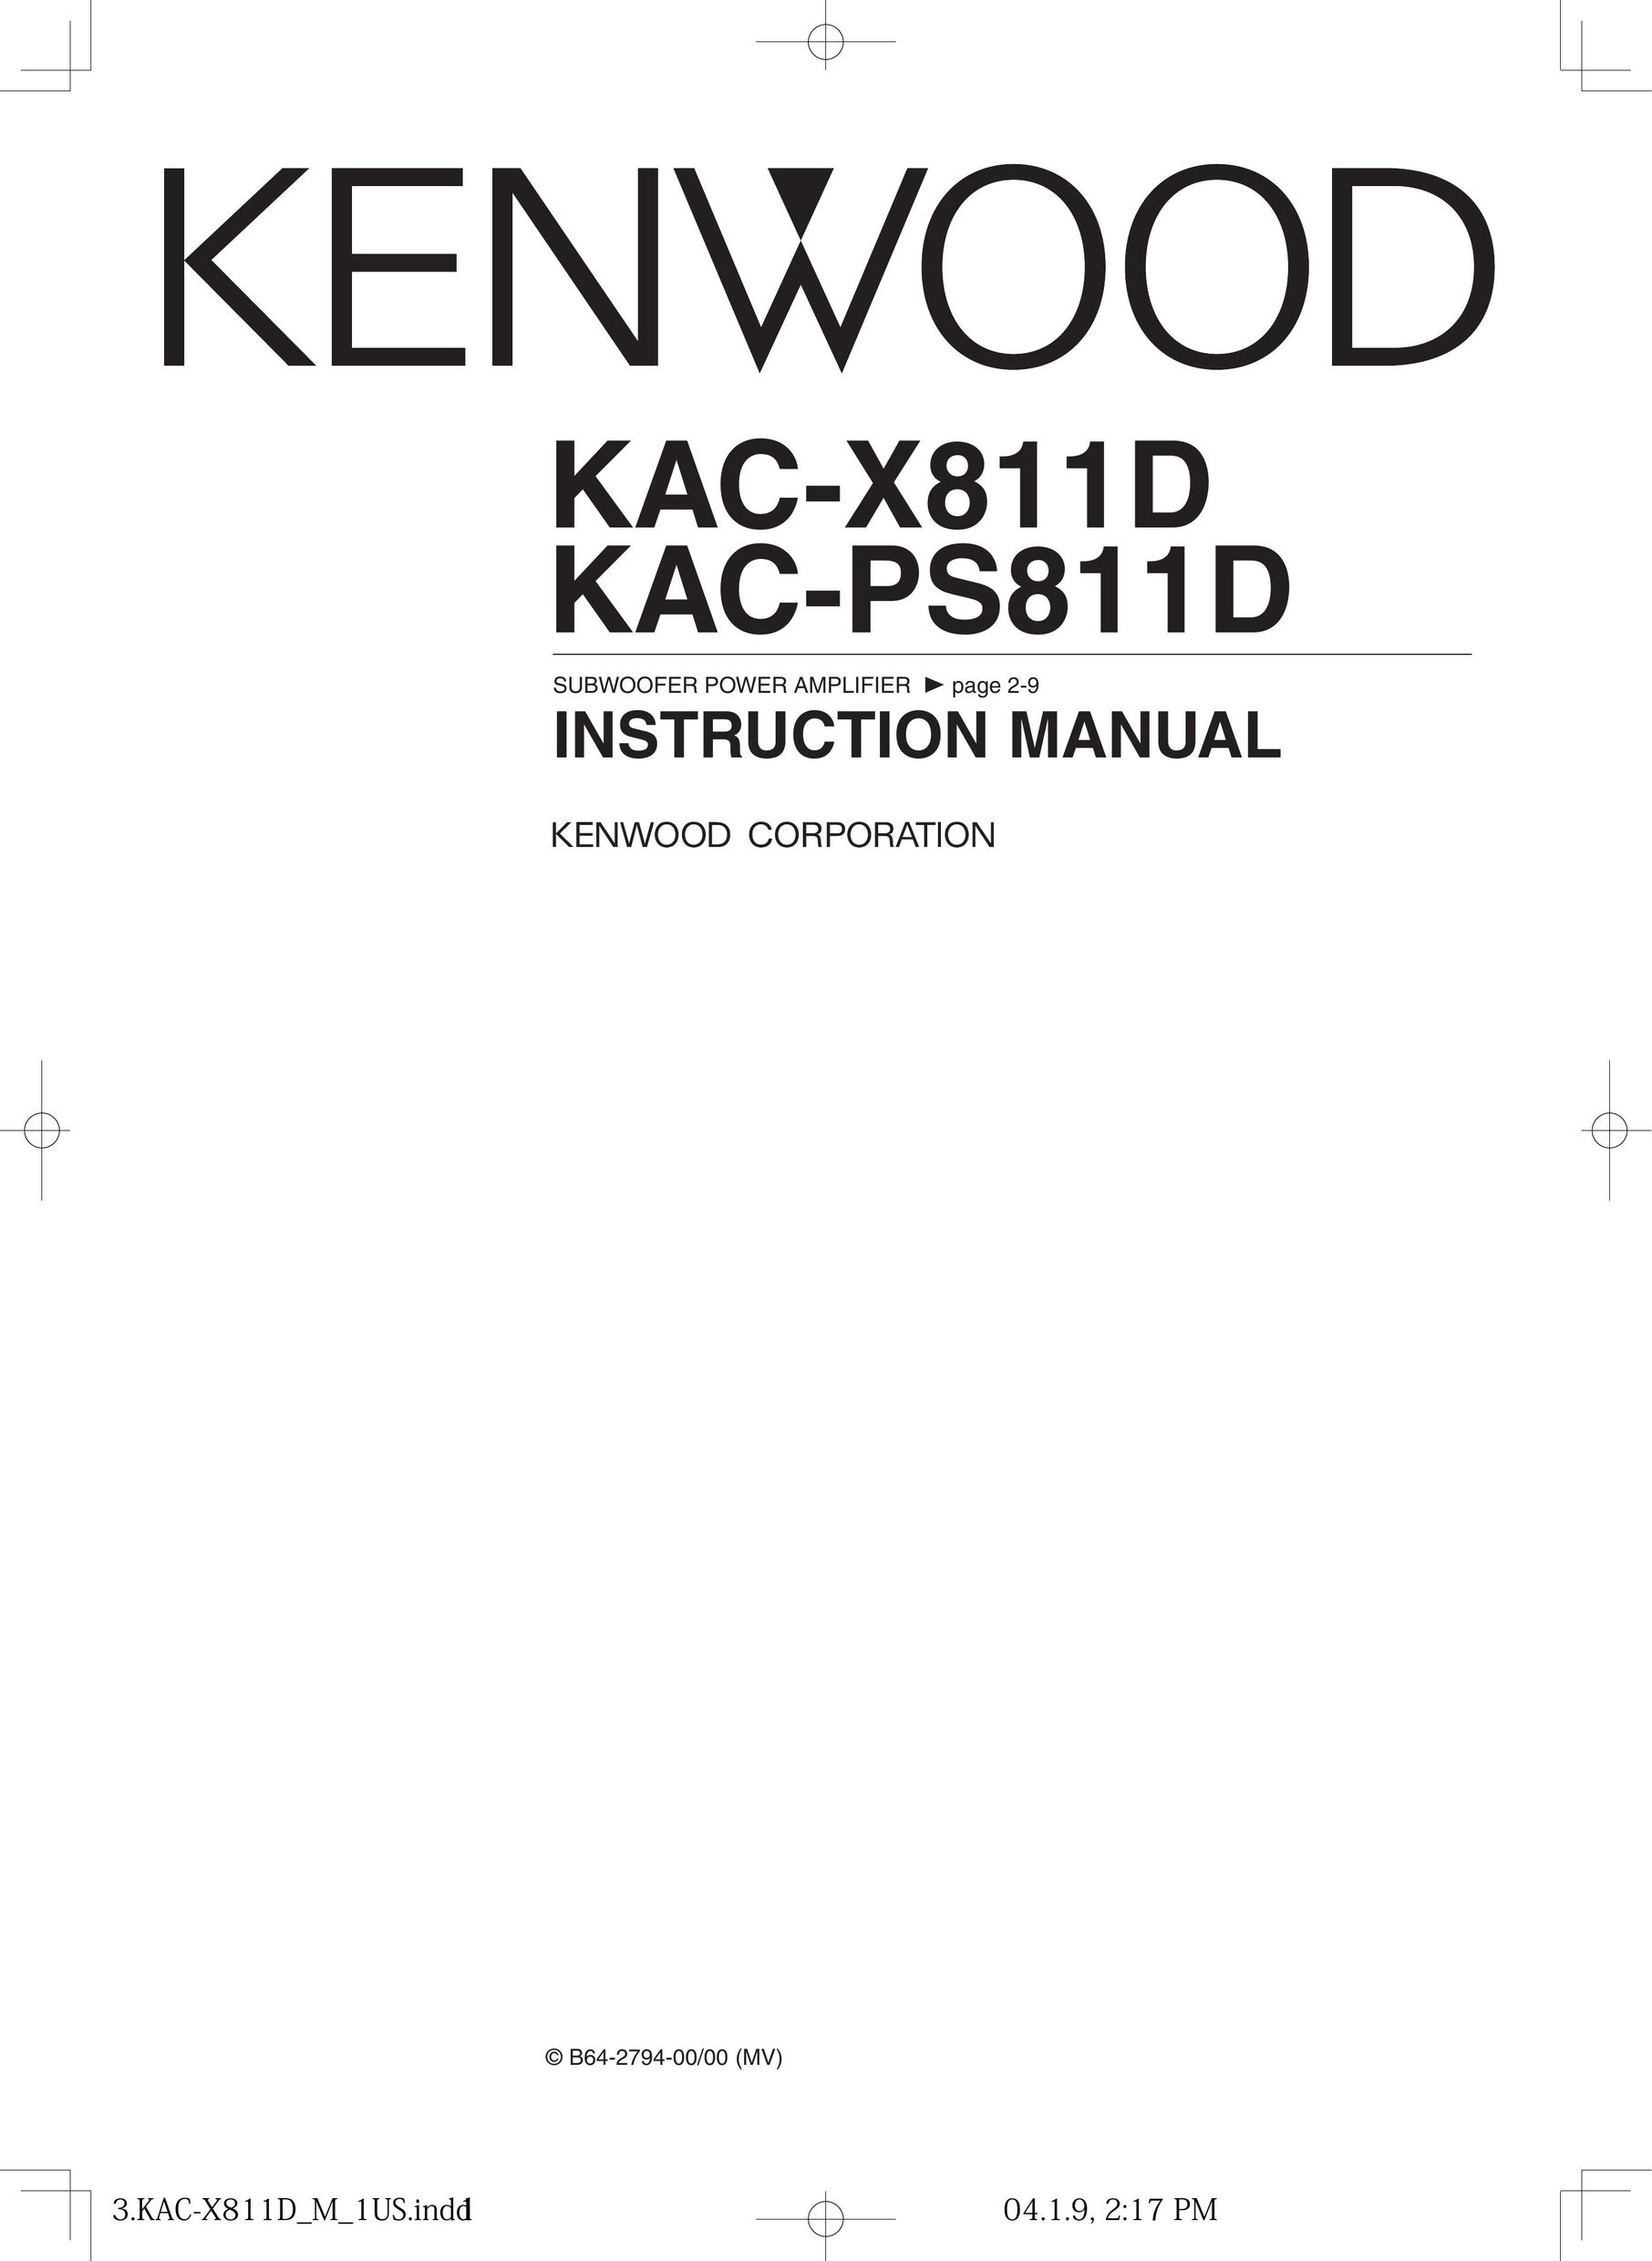 Kenwood KAC-X811D Speaker User Manual